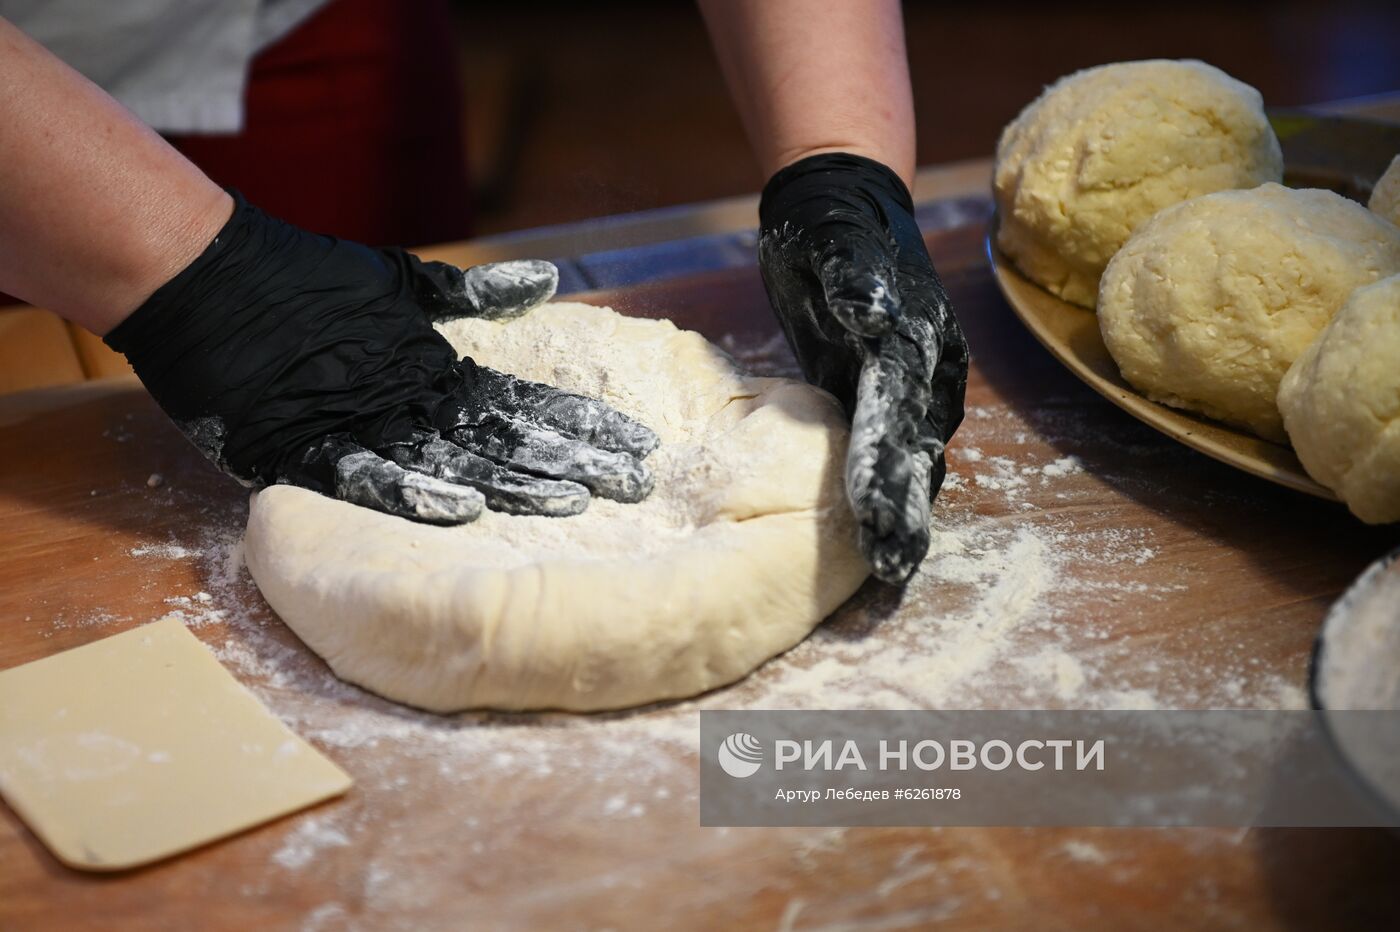 Акция "Испеки пироги и скажи: "Спасибо!" в рамках празднования Дня России в Сочи